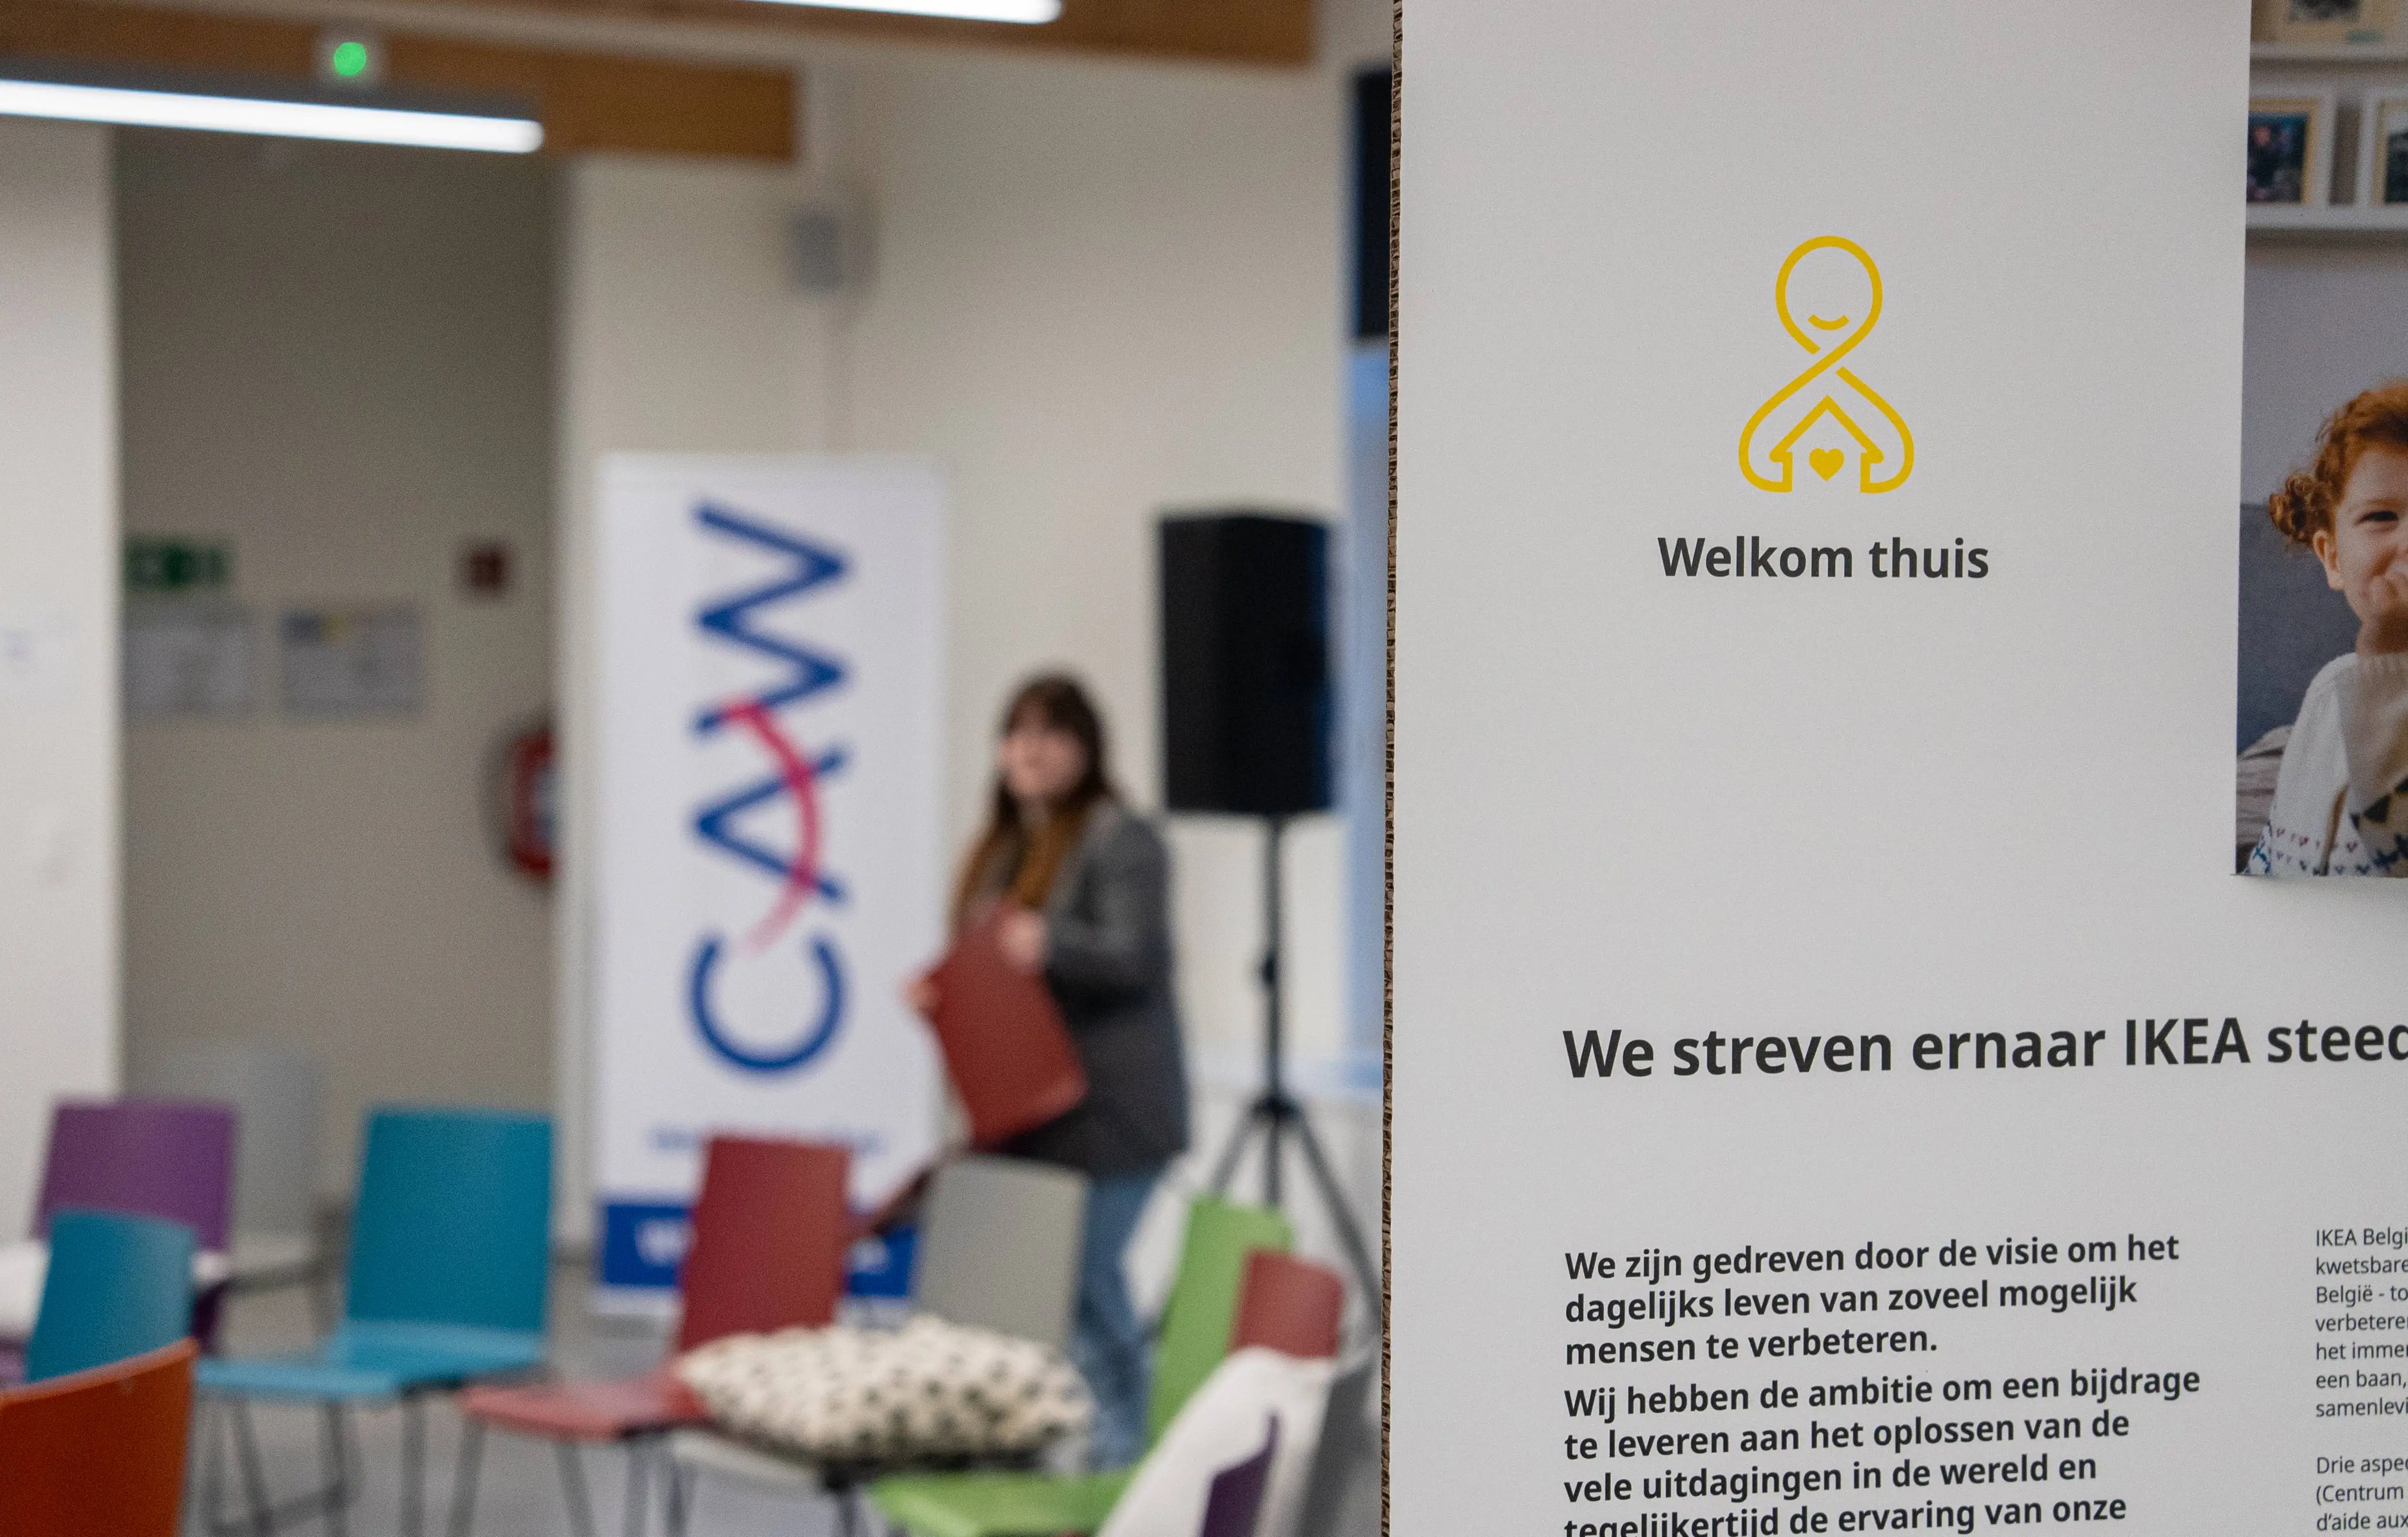 Panneau de décoration indiquant le nom du projet en néerlandais “Welkom Thuis” avec en arrière fond la salle vide